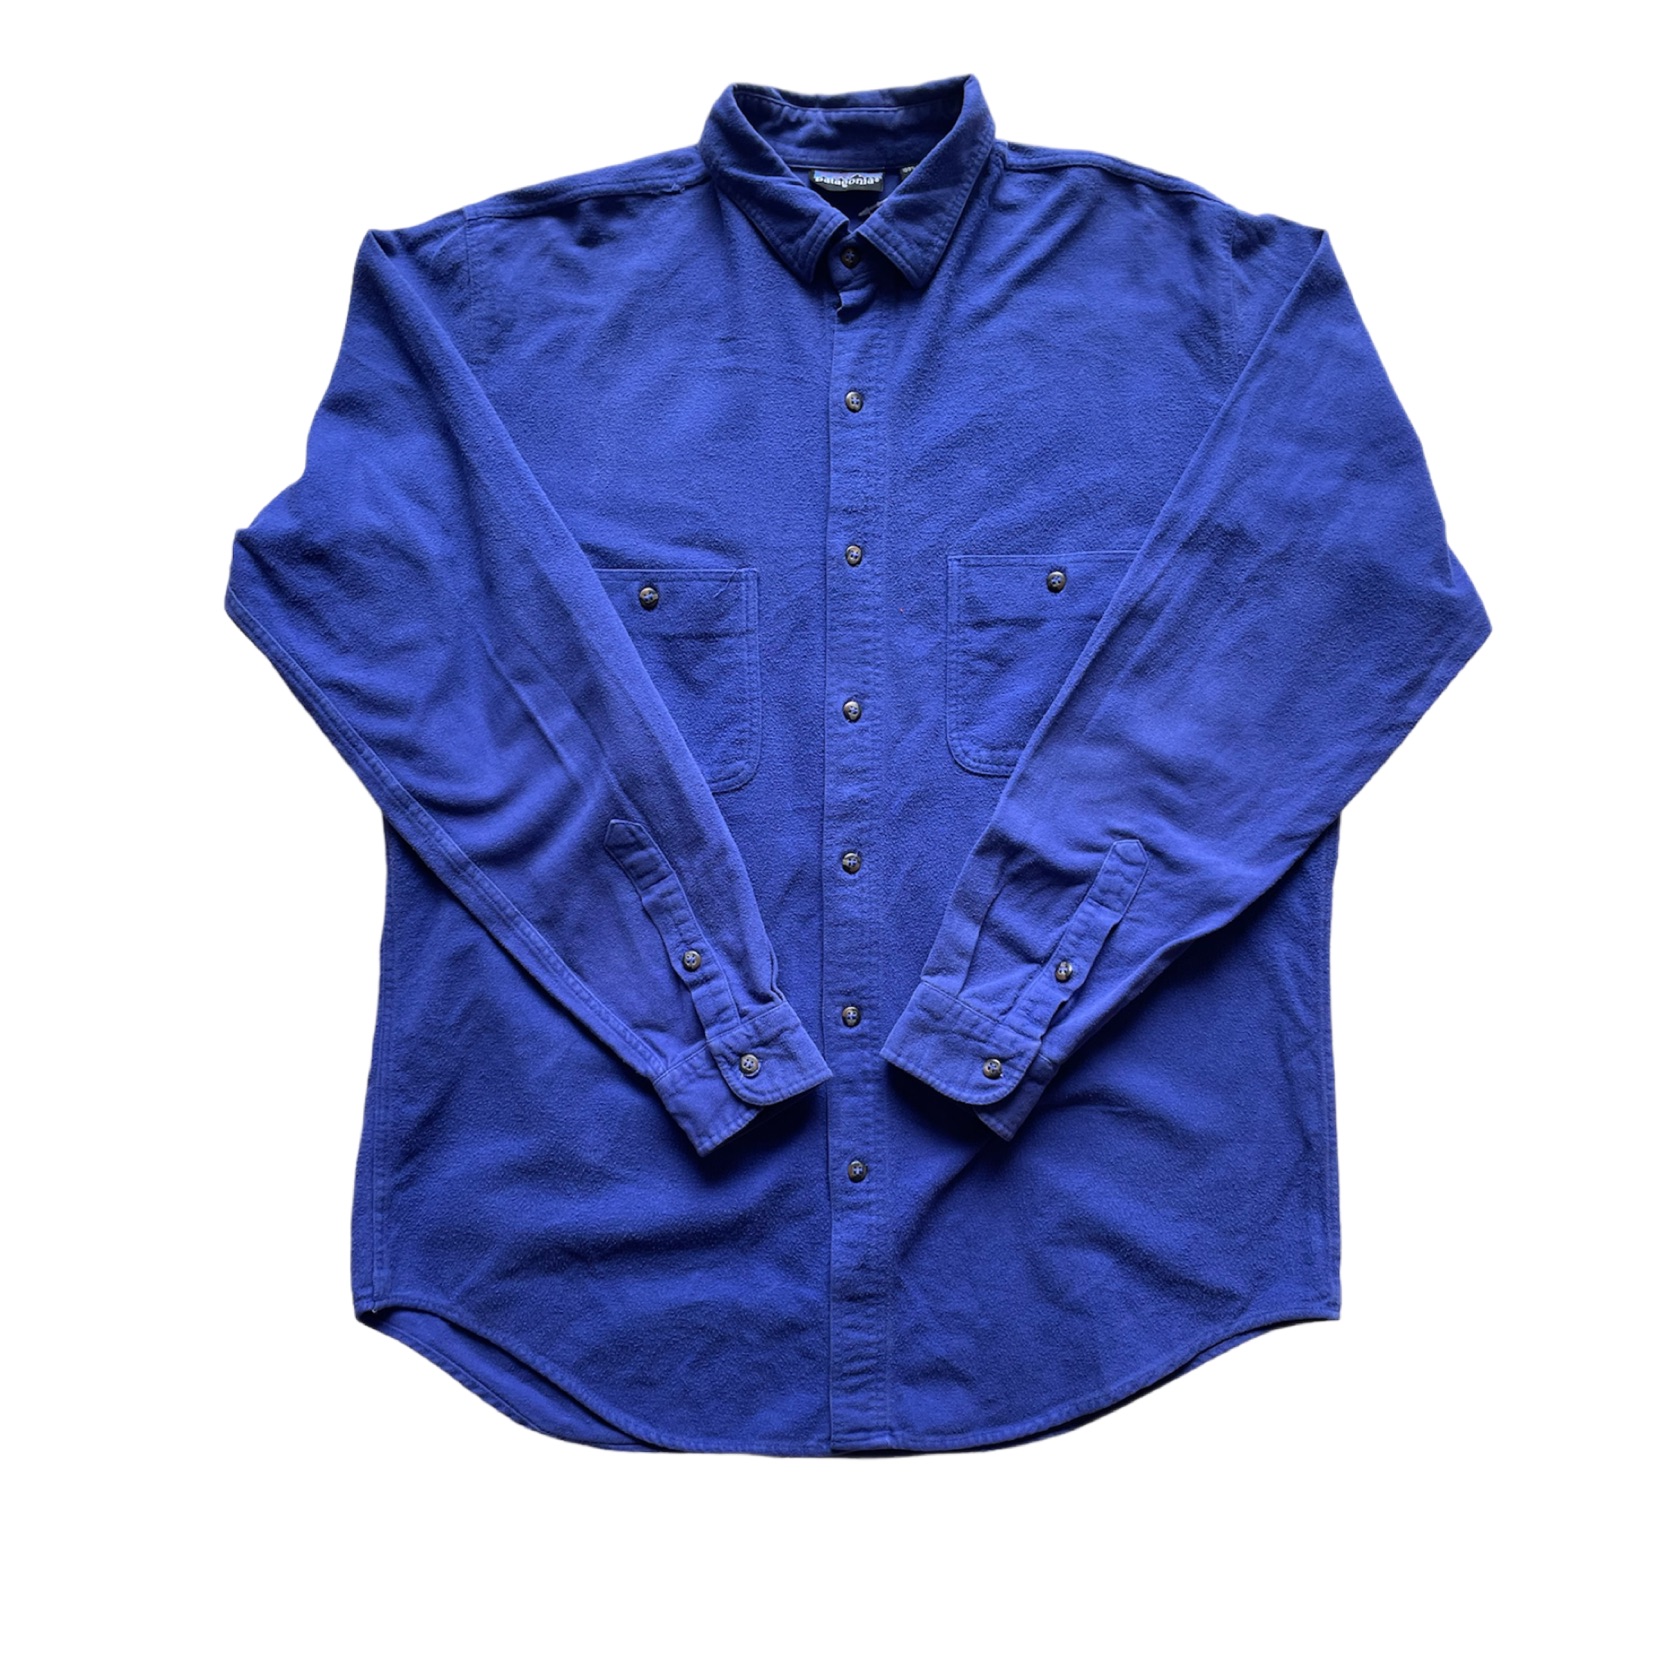 80-90's パタゴニア 長袖シャツ patagonia L/S shirt ネルシャツ 90 